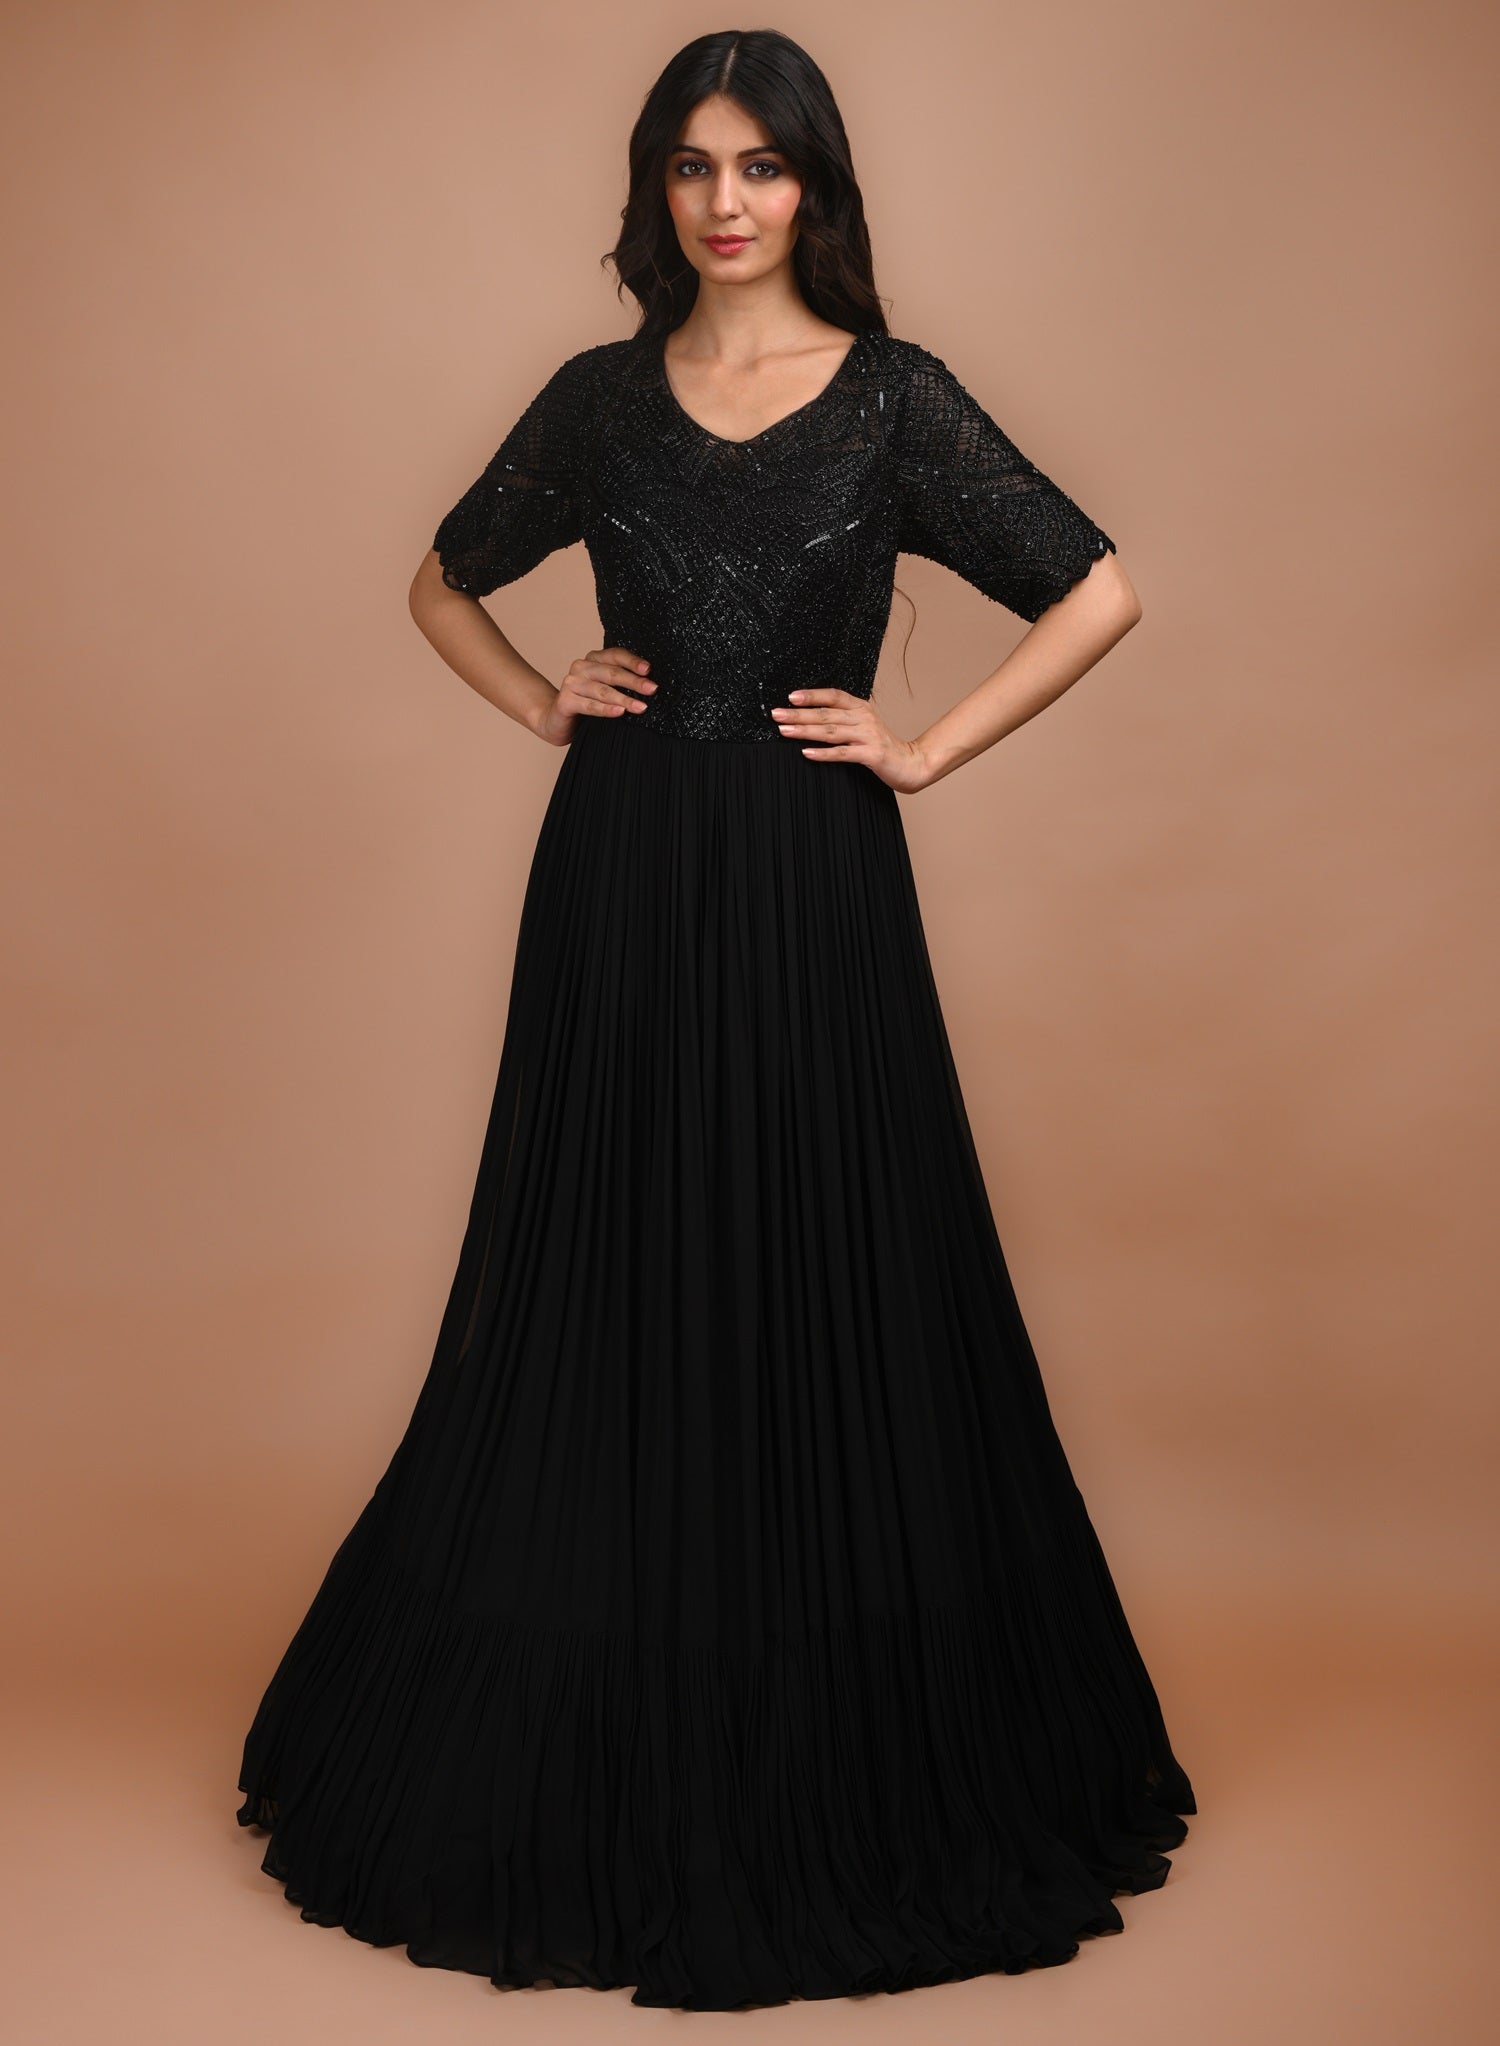 Ranas Black Designer Gown